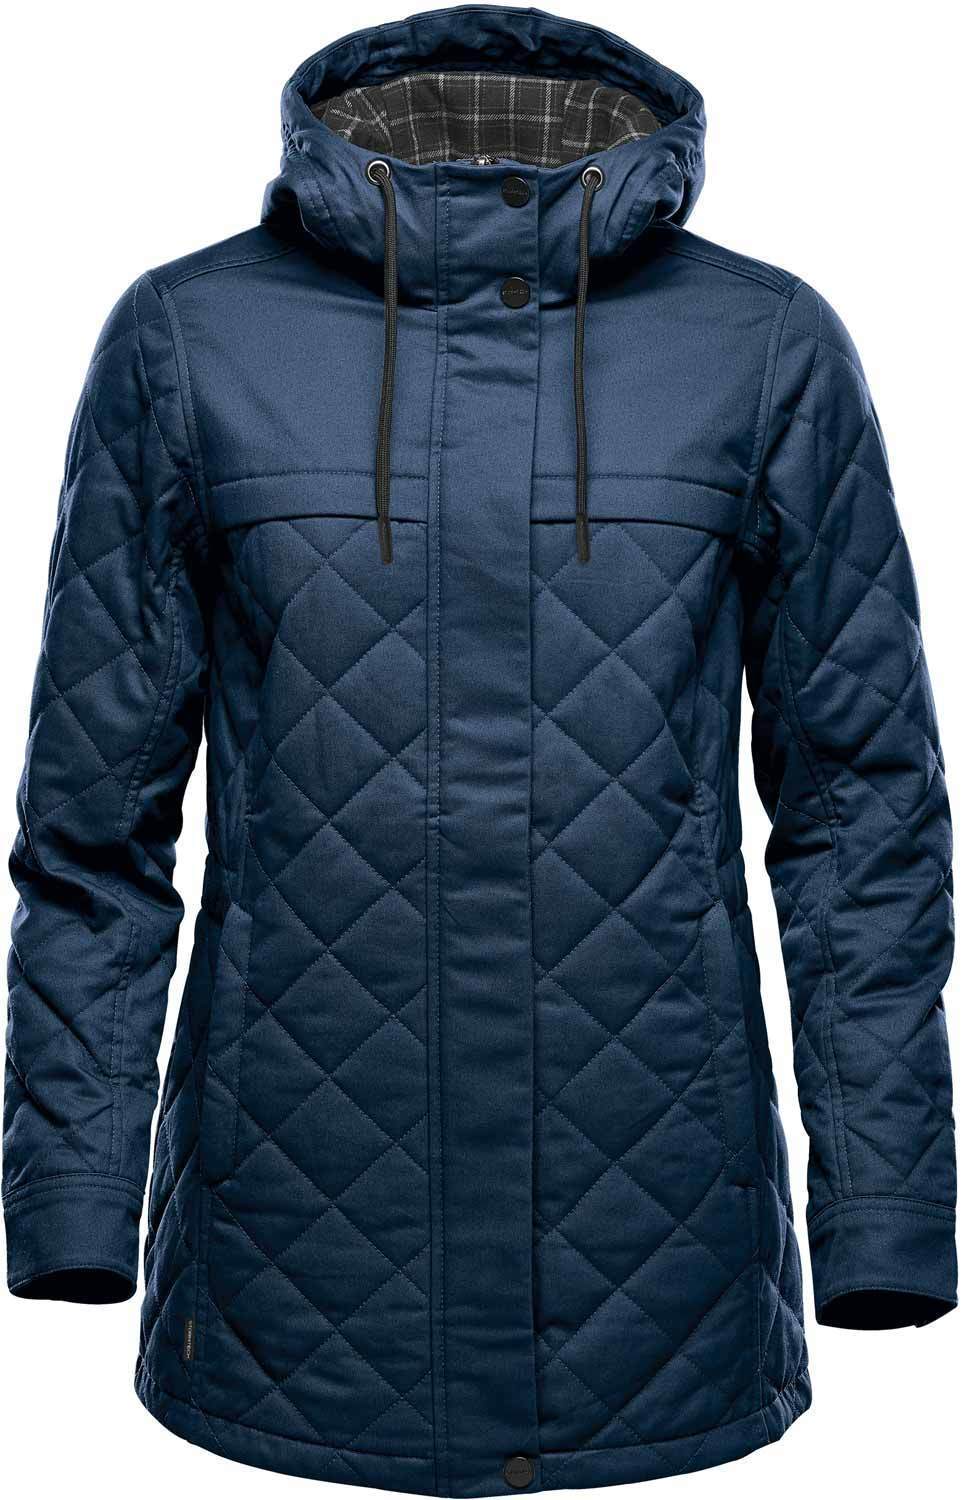 BXQ-1W Bushwick quilted jacket pour femme - Liquidation